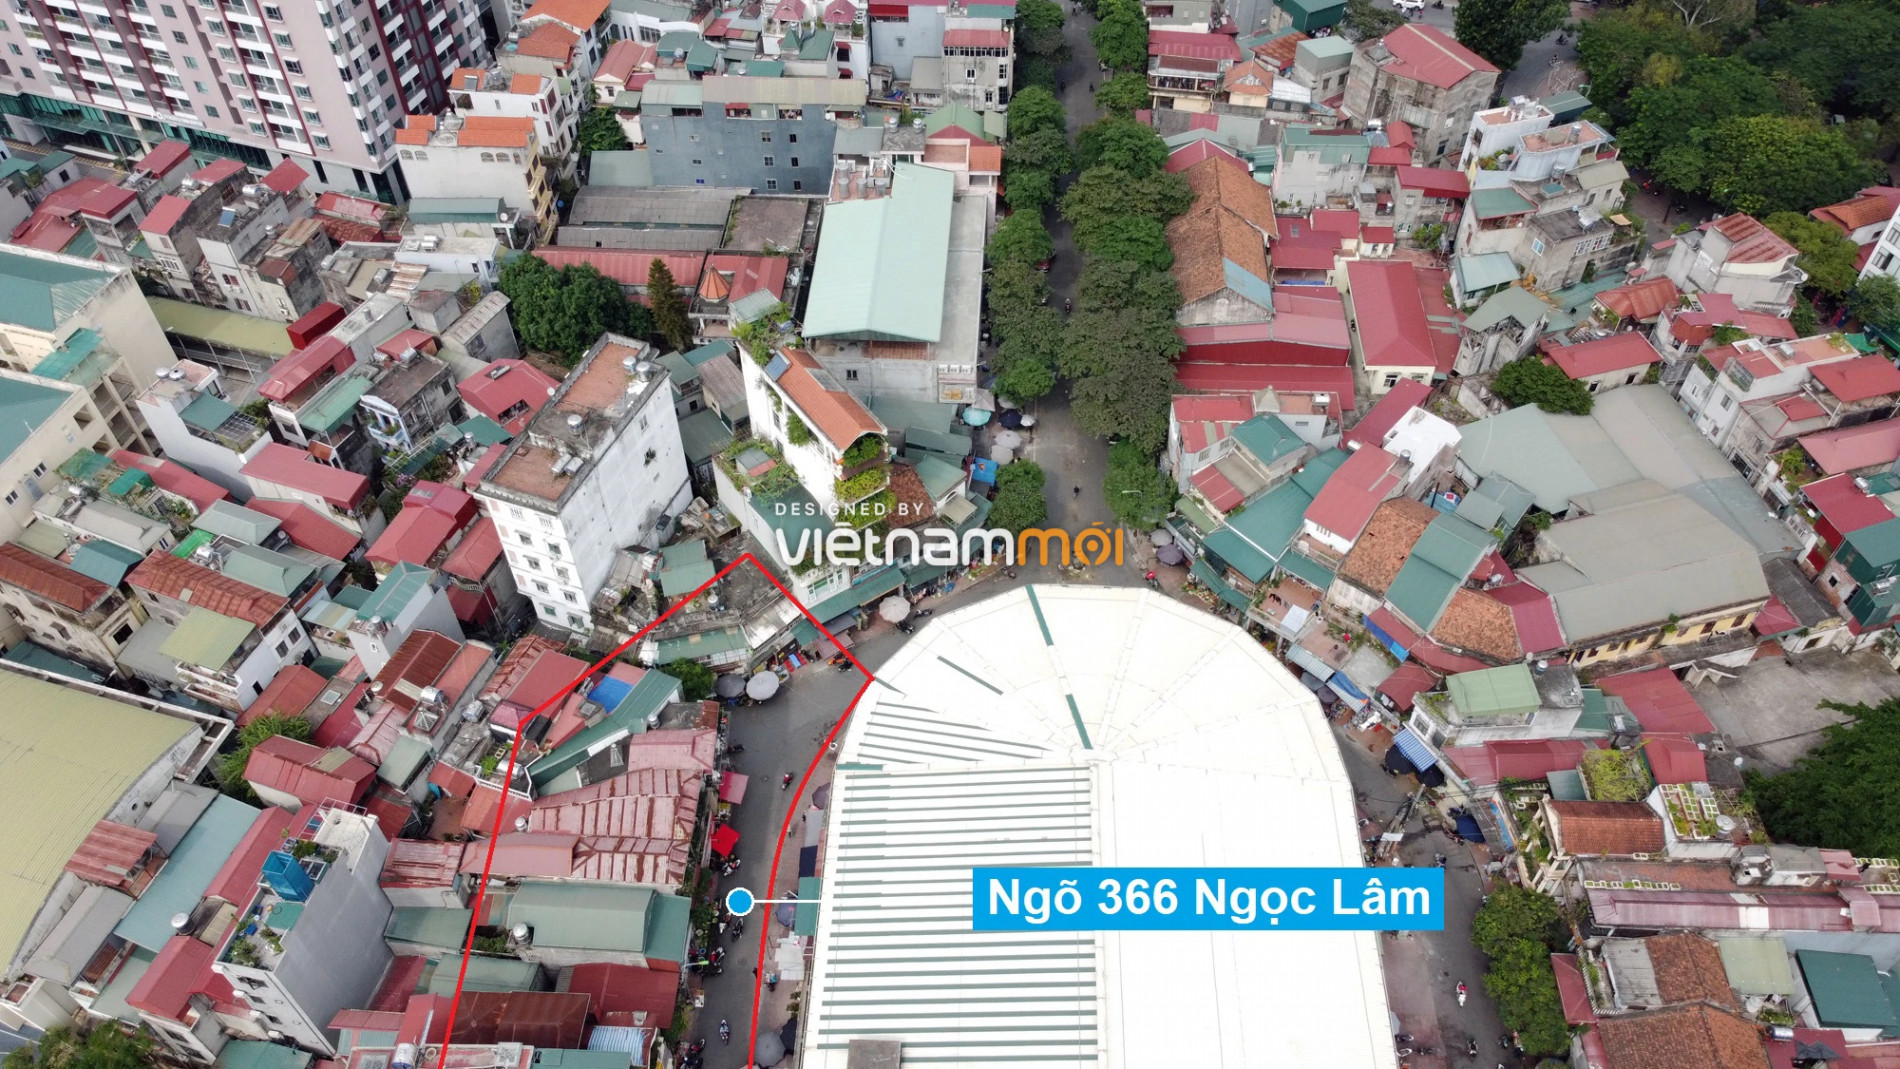 Những khu đất sắp thu hồi để mở đường ở phường Ngọc Lâm, Long Biên, Hà Nội (phần 2) - Ảnh 17.